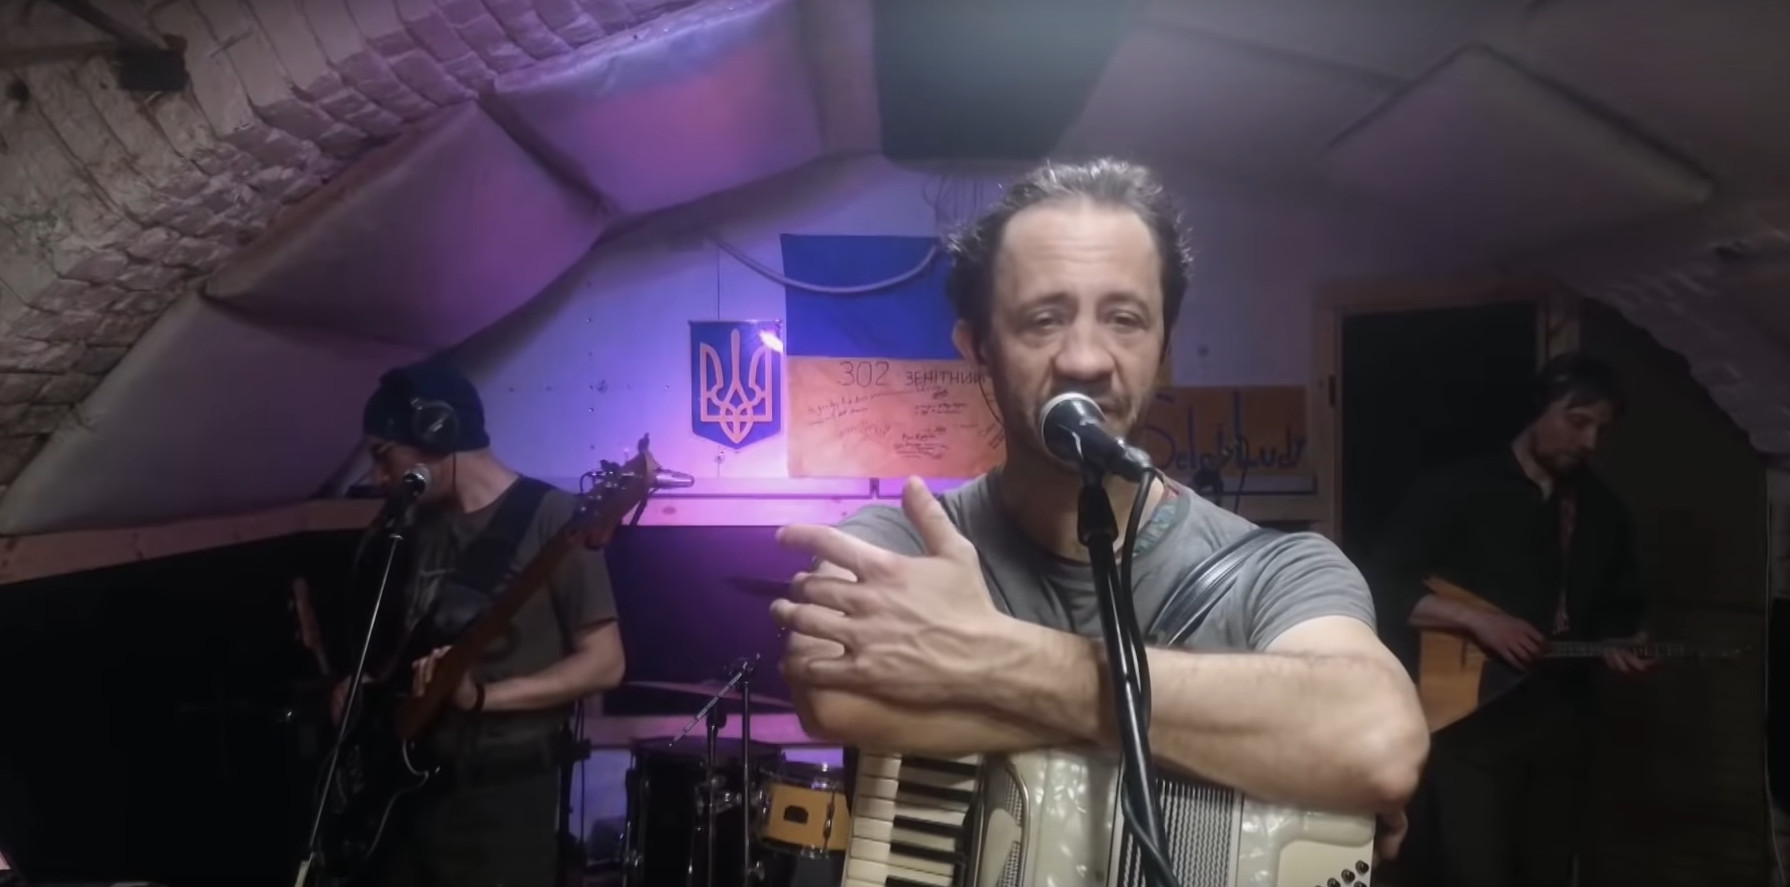 Joko und Klass überließen der ukrainischen Band Selo i Ludy die Bühne.